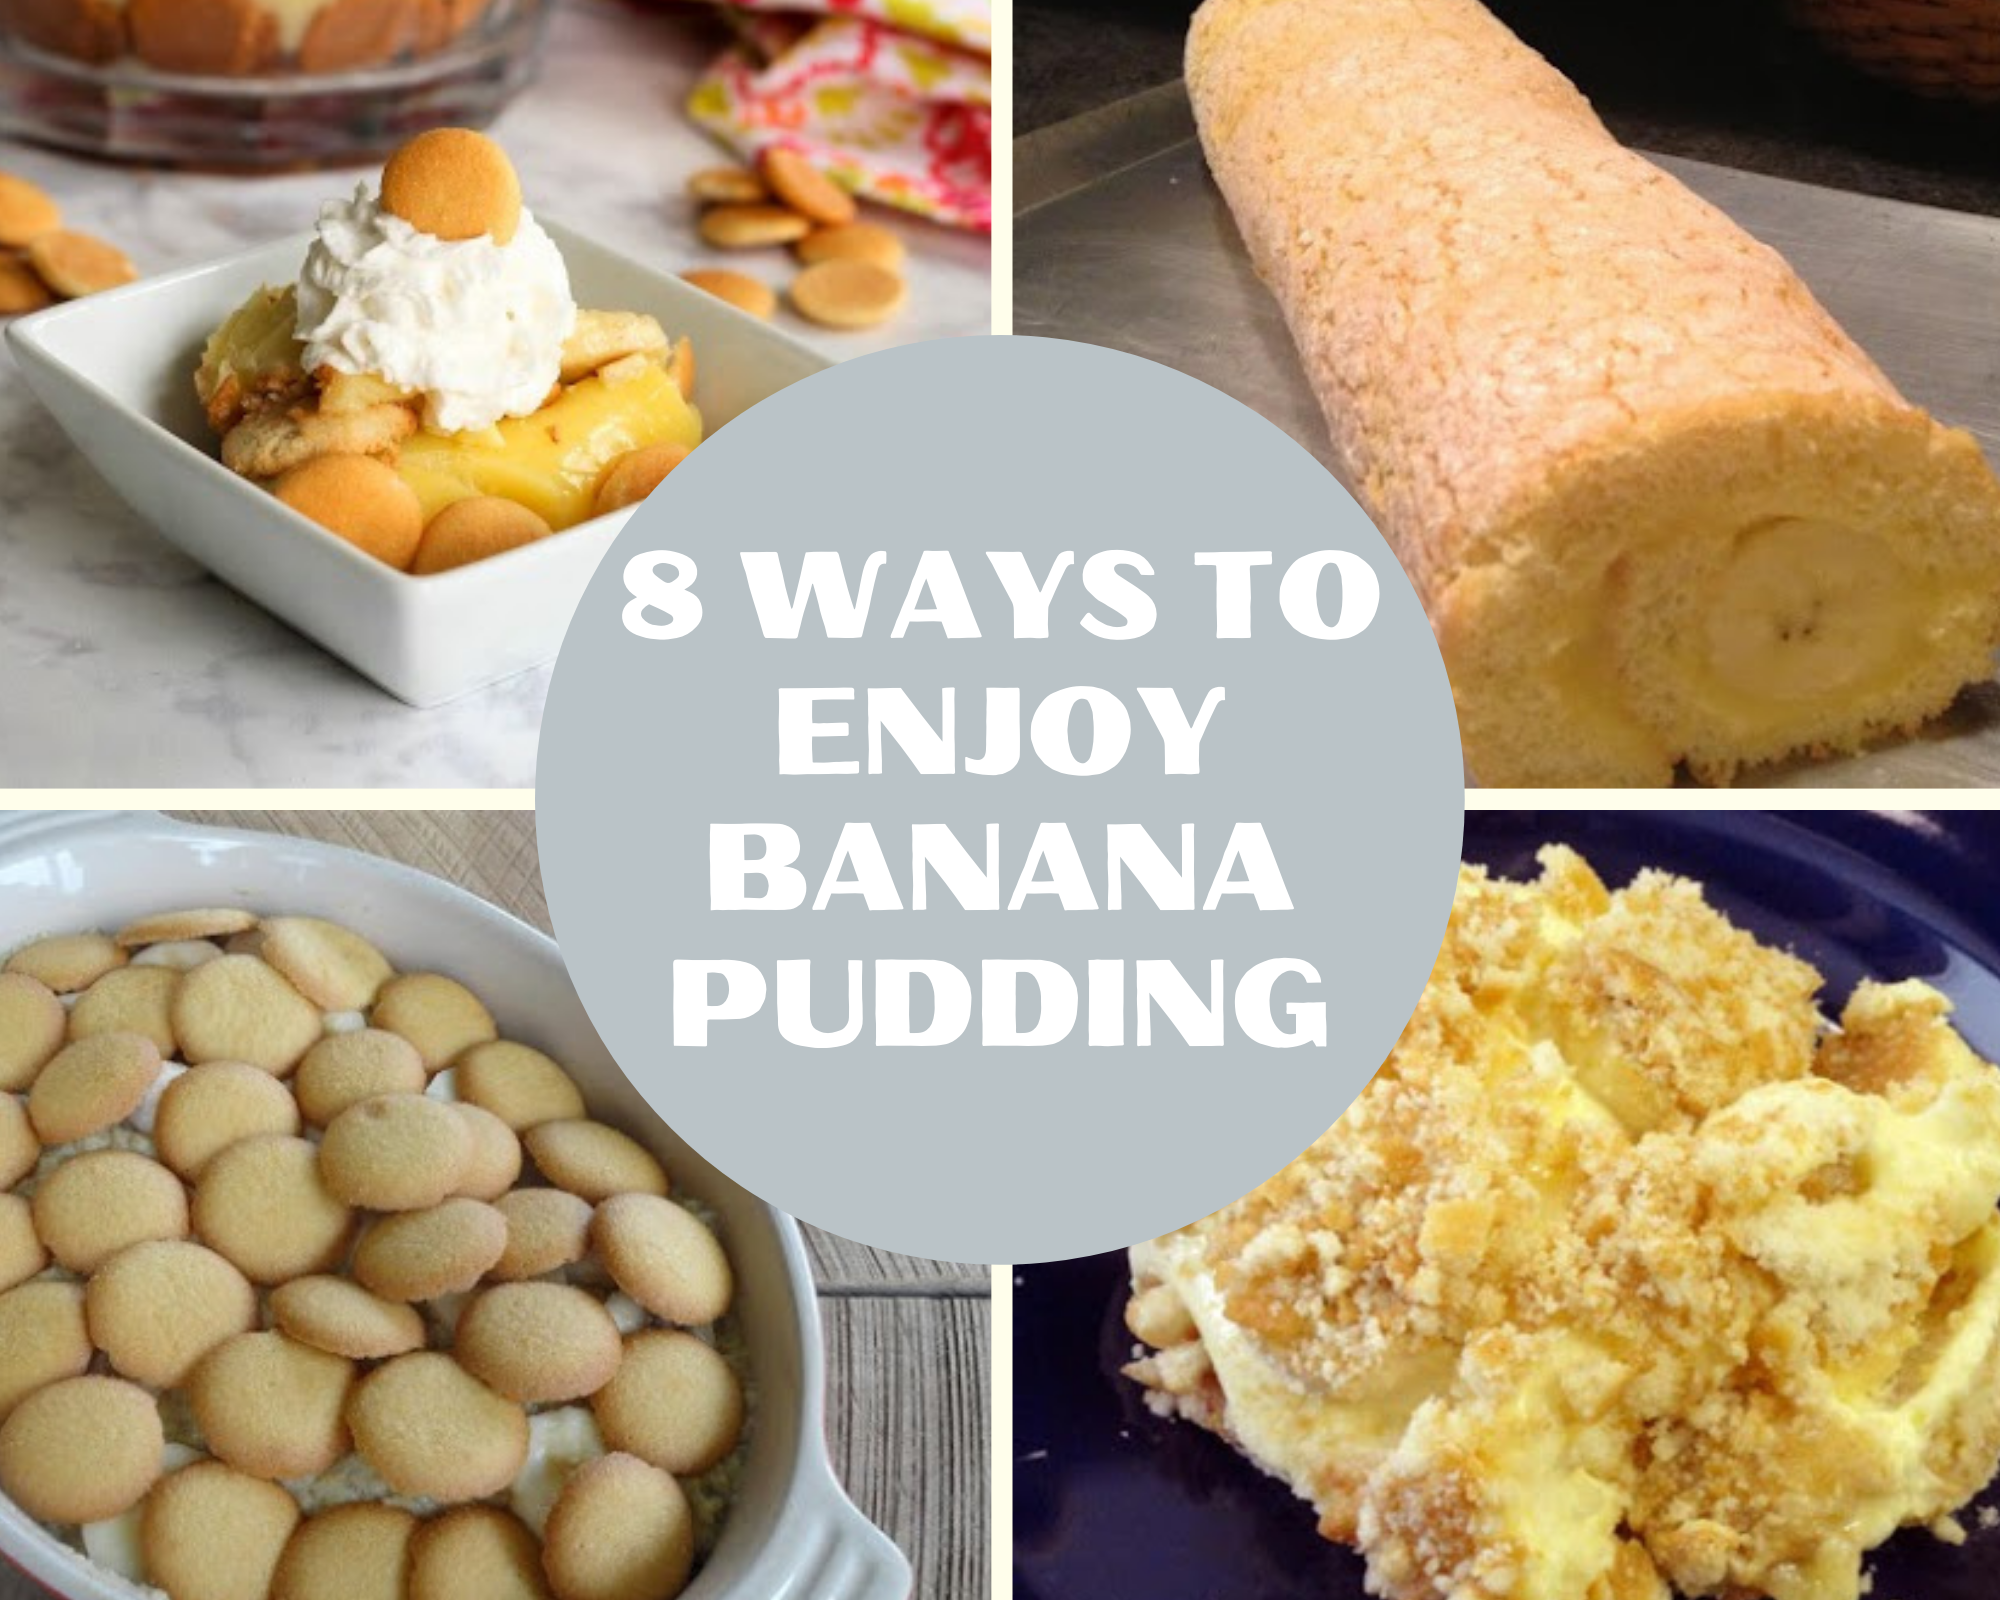 Banana pudding recipes